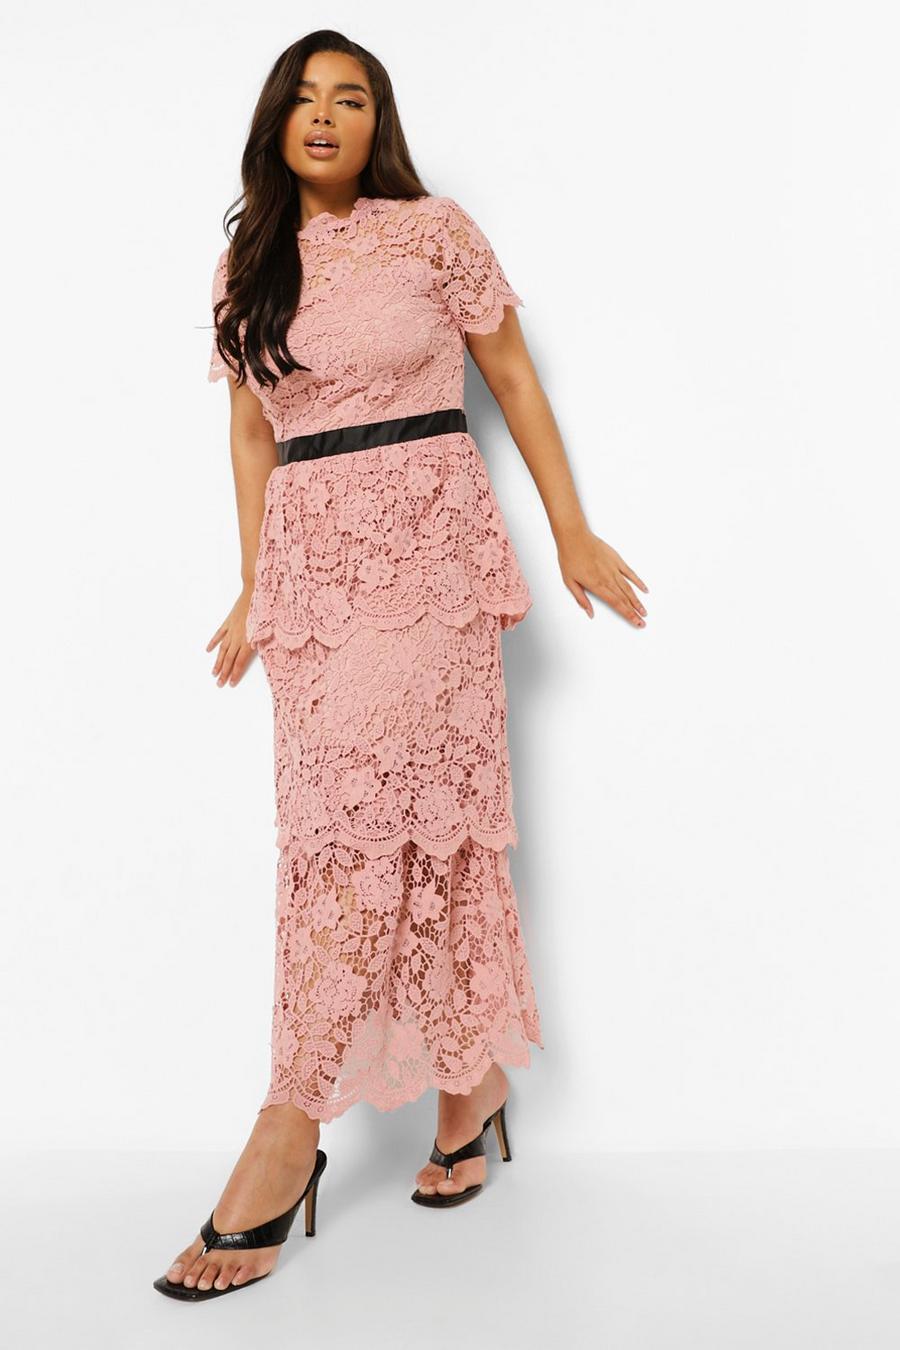 סמוק rosa שמלת מידקסי מדורגת מתחרה לאירועים, מידות גדולות